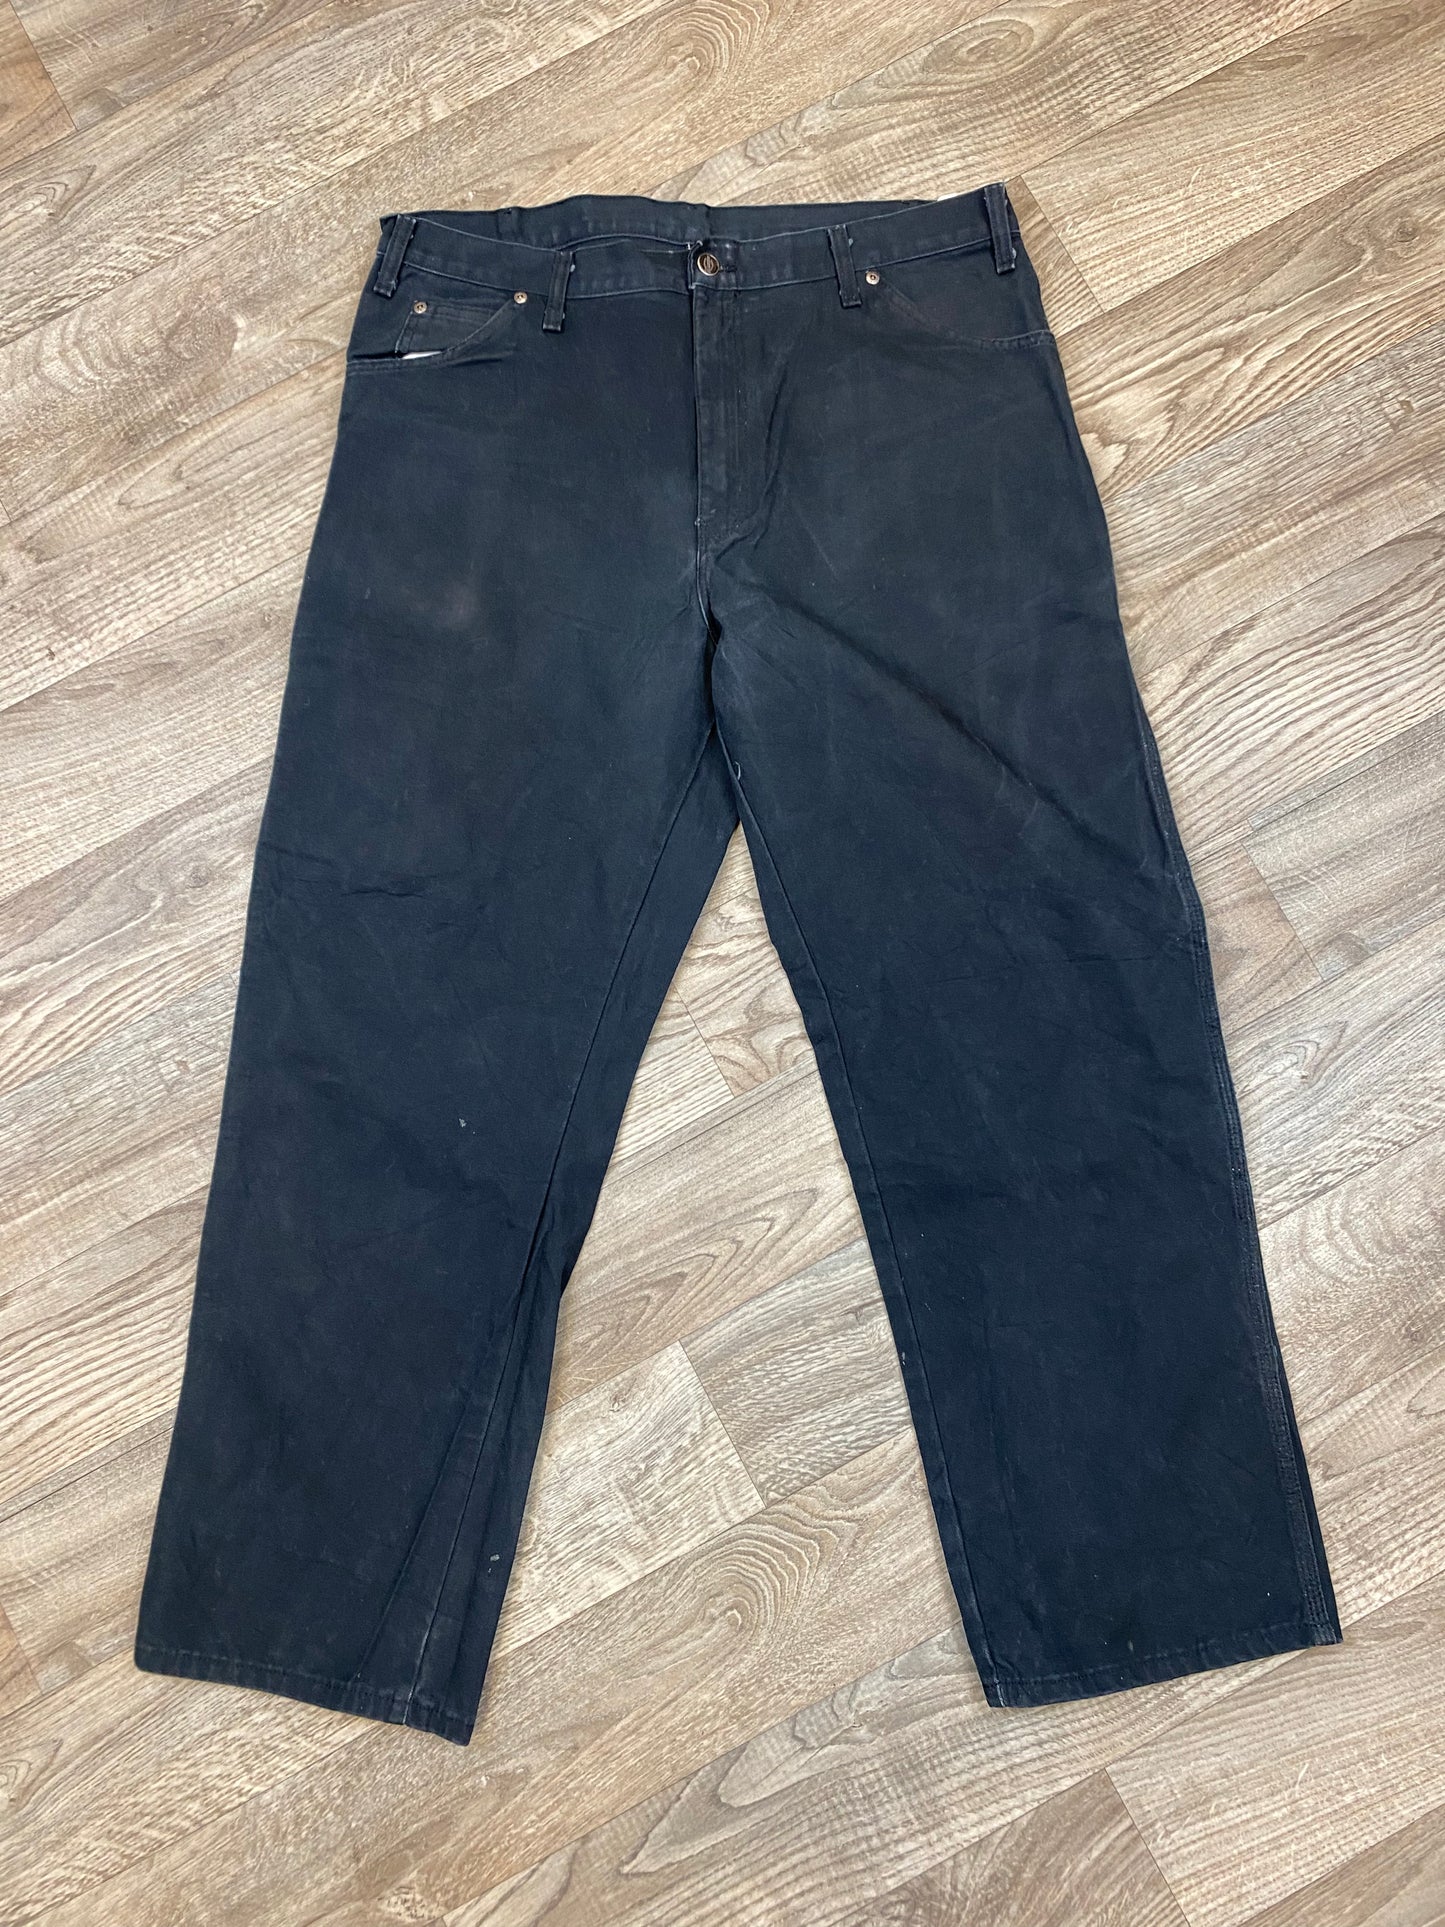 Vintage Dickies Carpenter 38x30 Pants